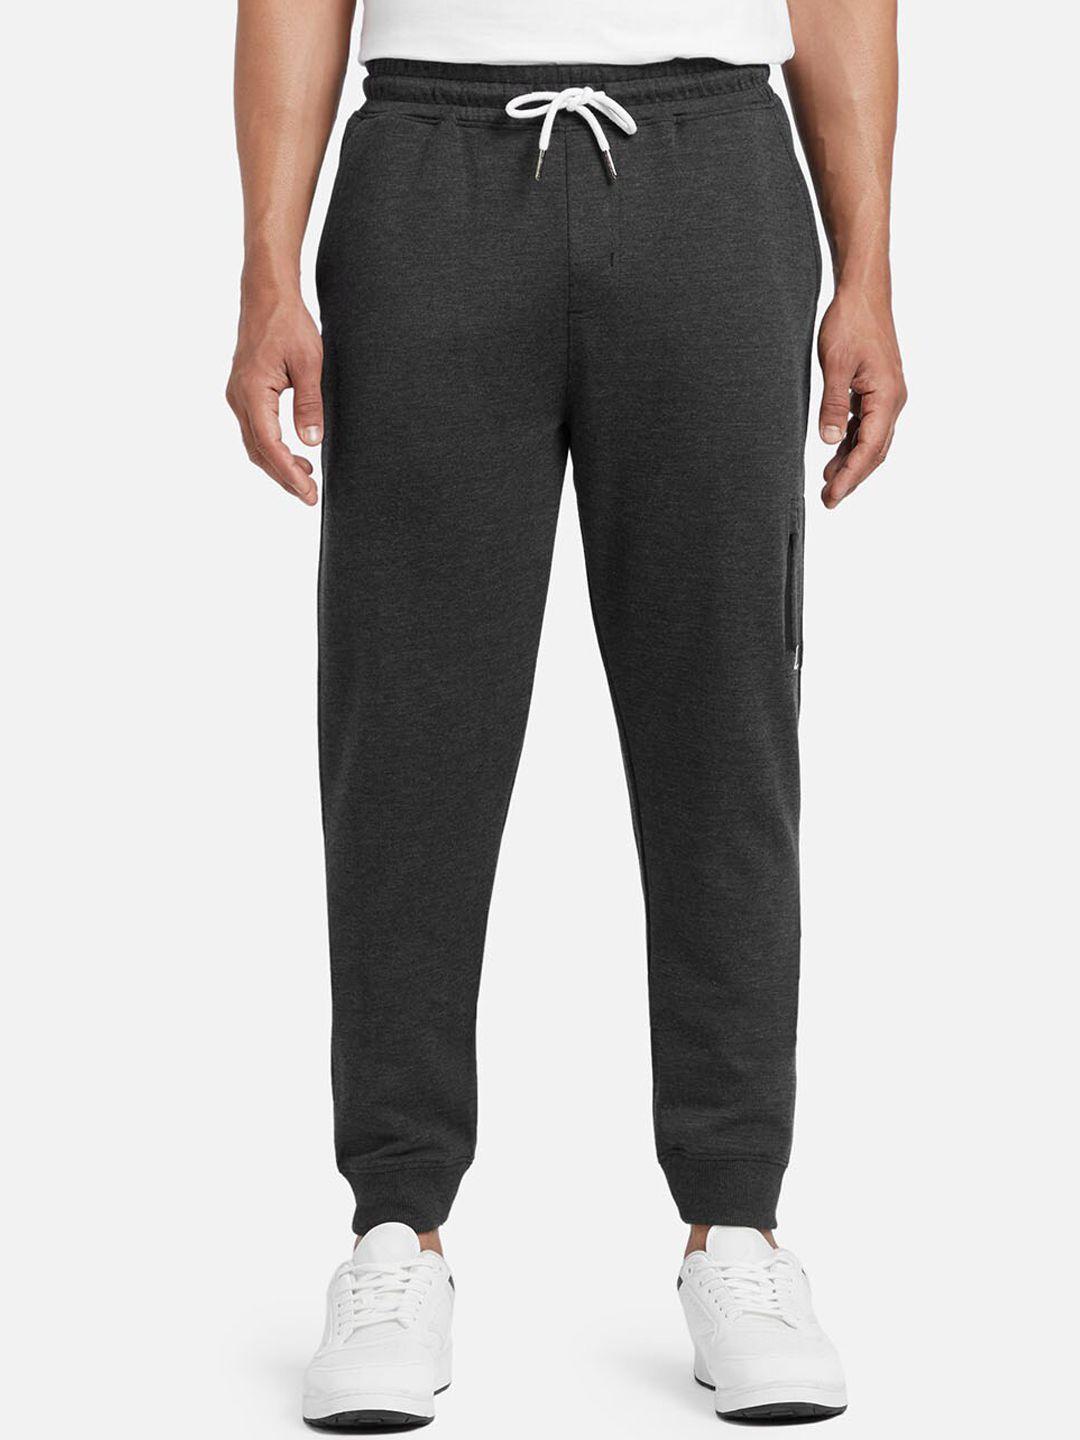 xyxx men grey cotton joggers with zipper pocket